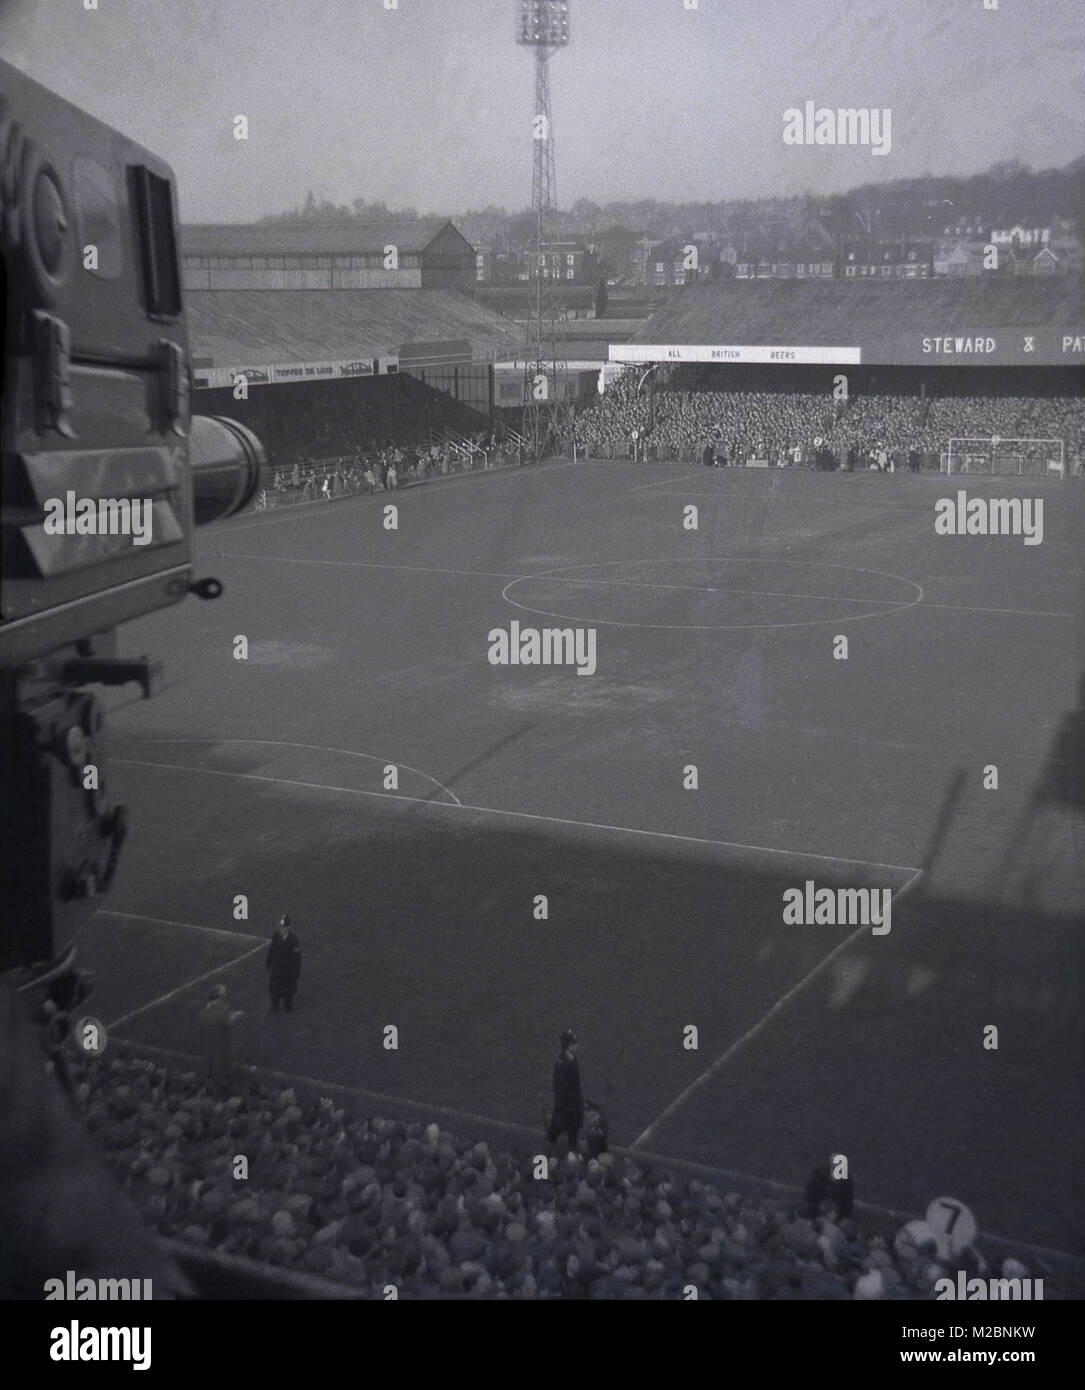 Anni sessanta, storico tettuccio di foto che mostra il campo di calcio e stand di Norwich FC in questo momento, presi dalla televisione gantry di fronte allo stadio e la zona circostante, Norwich, Inghilterra, Regno Unito. Foto Stock